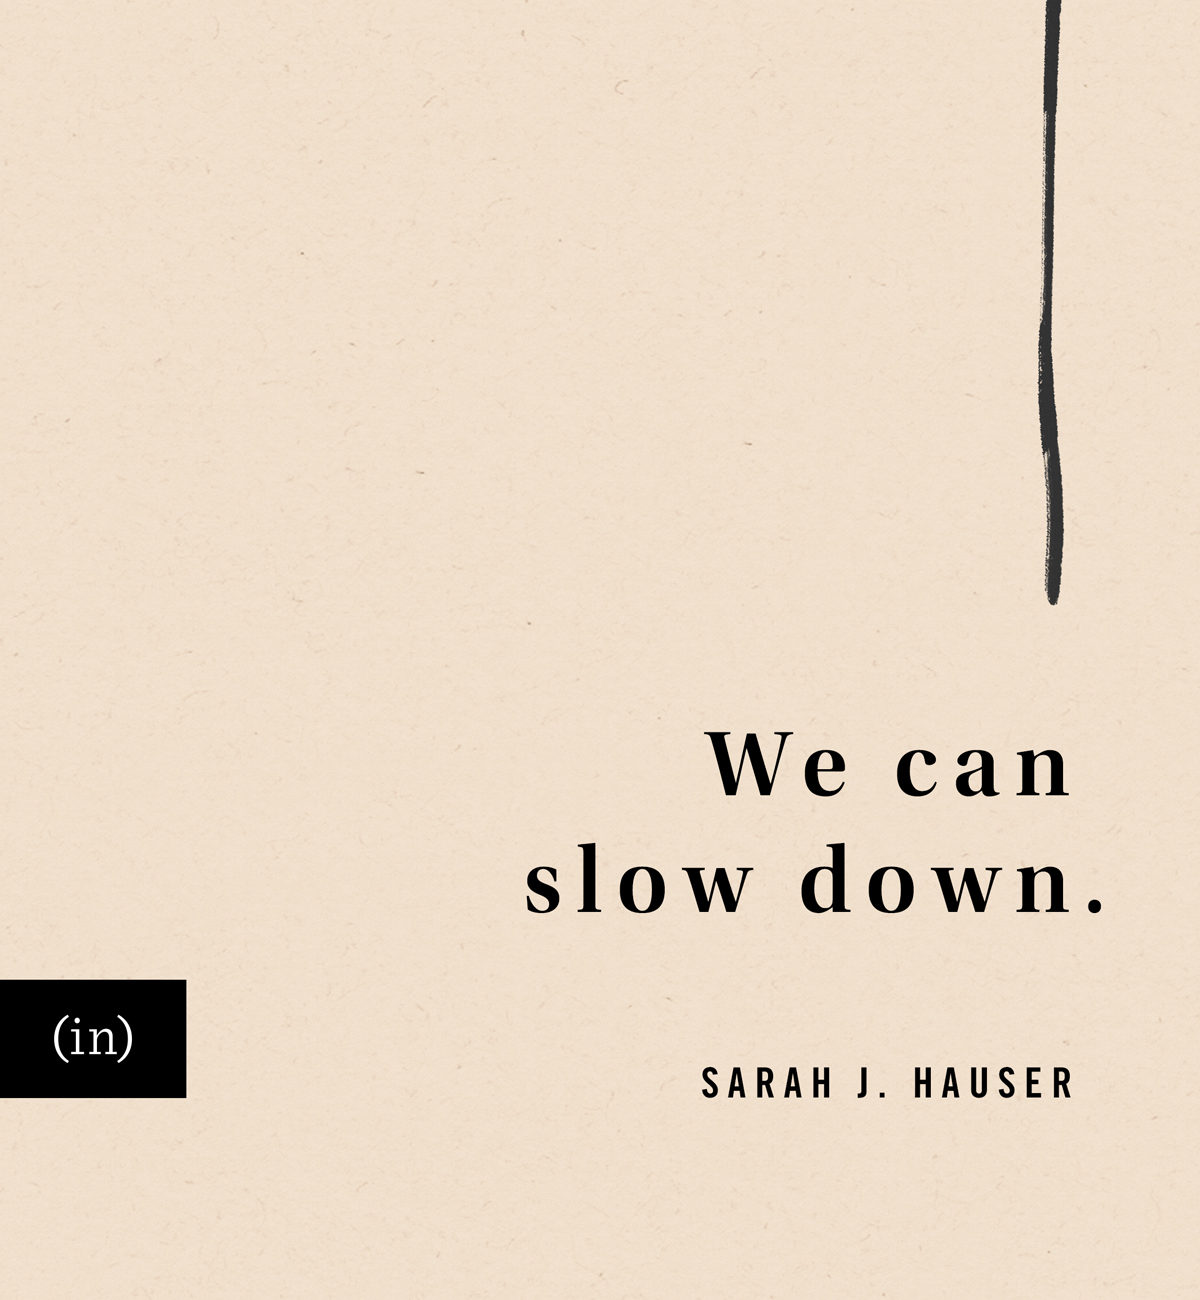 We can slow down. -Sarah J. Hauser